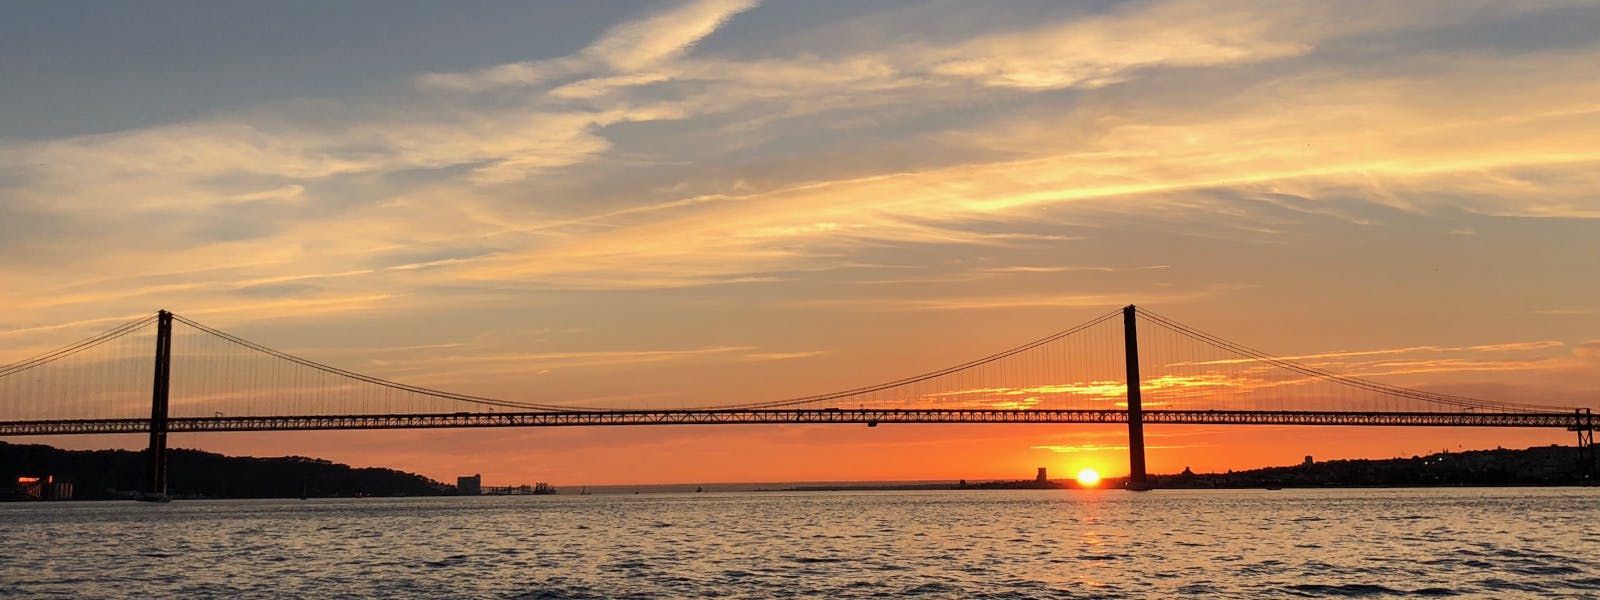 Zeil bij zonsondergang in Lissabon gedurende twee uur en 30 minuten